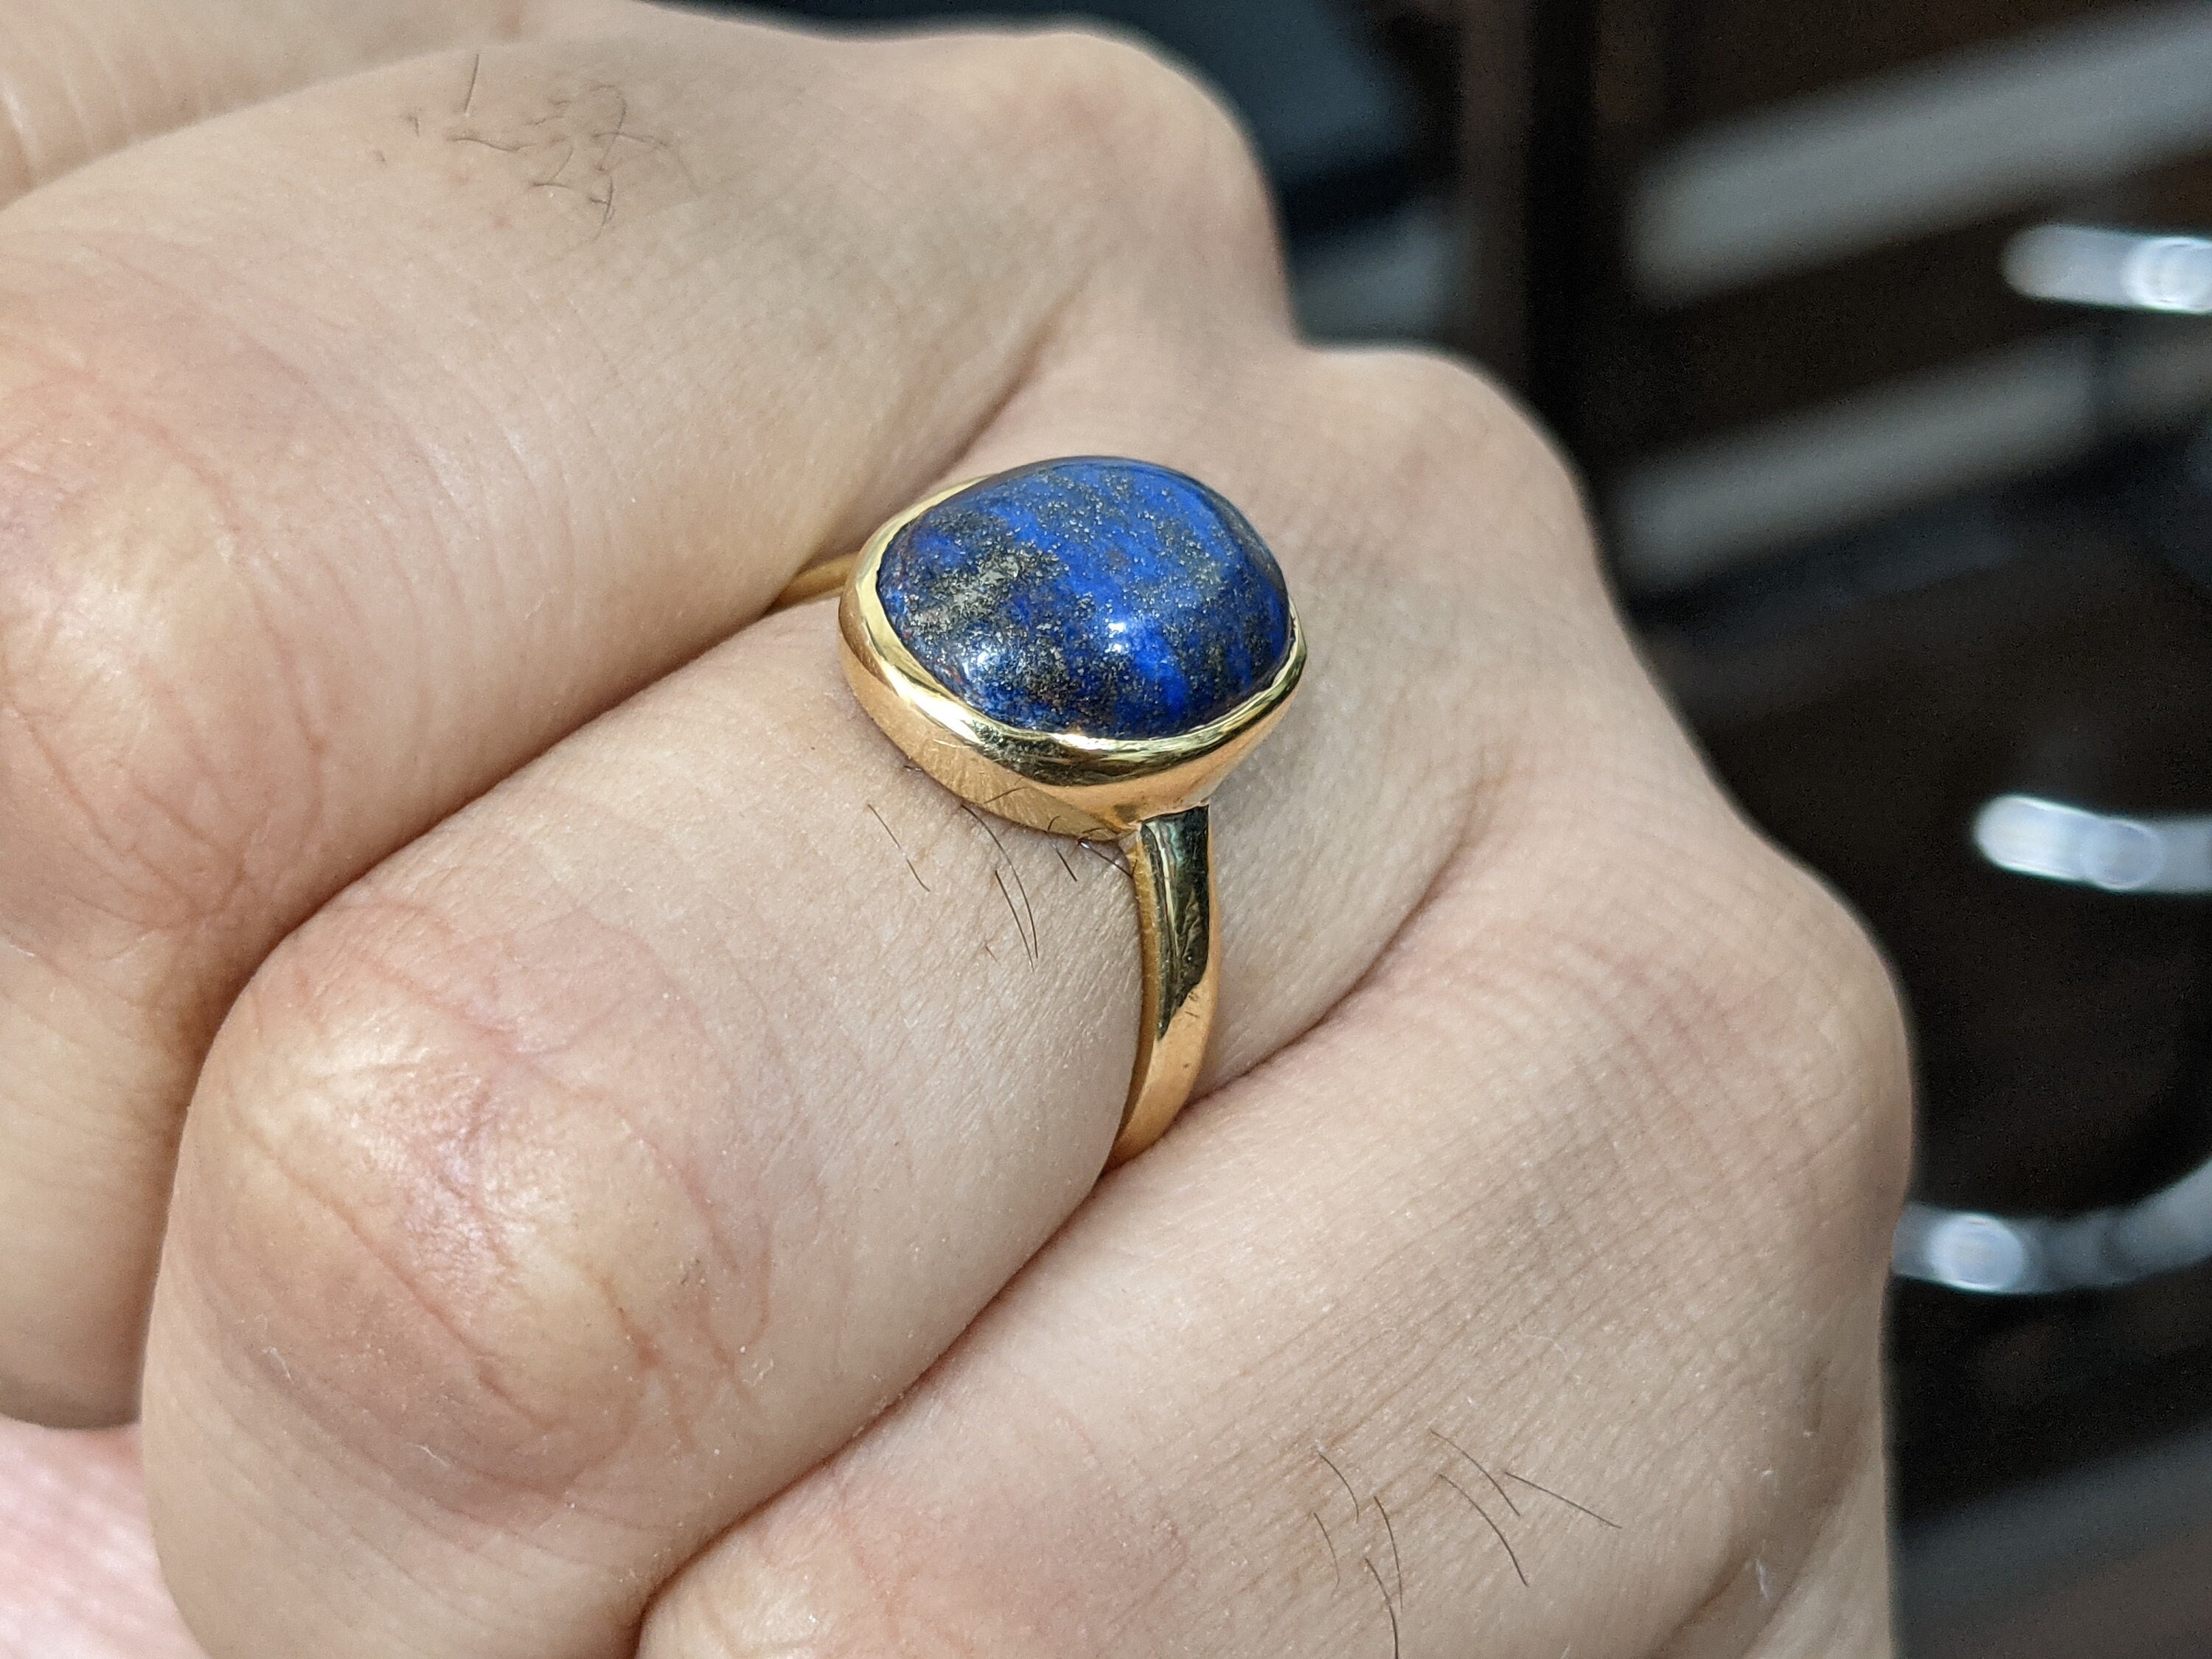 Men Lapis Stone Ring Lajward Ring Sterling Silver Lapis Lazuli Ring for Man  Blue Lapis Lazuli Ring Gift for Him Lapis Birthstone Ring - Etsy Israel